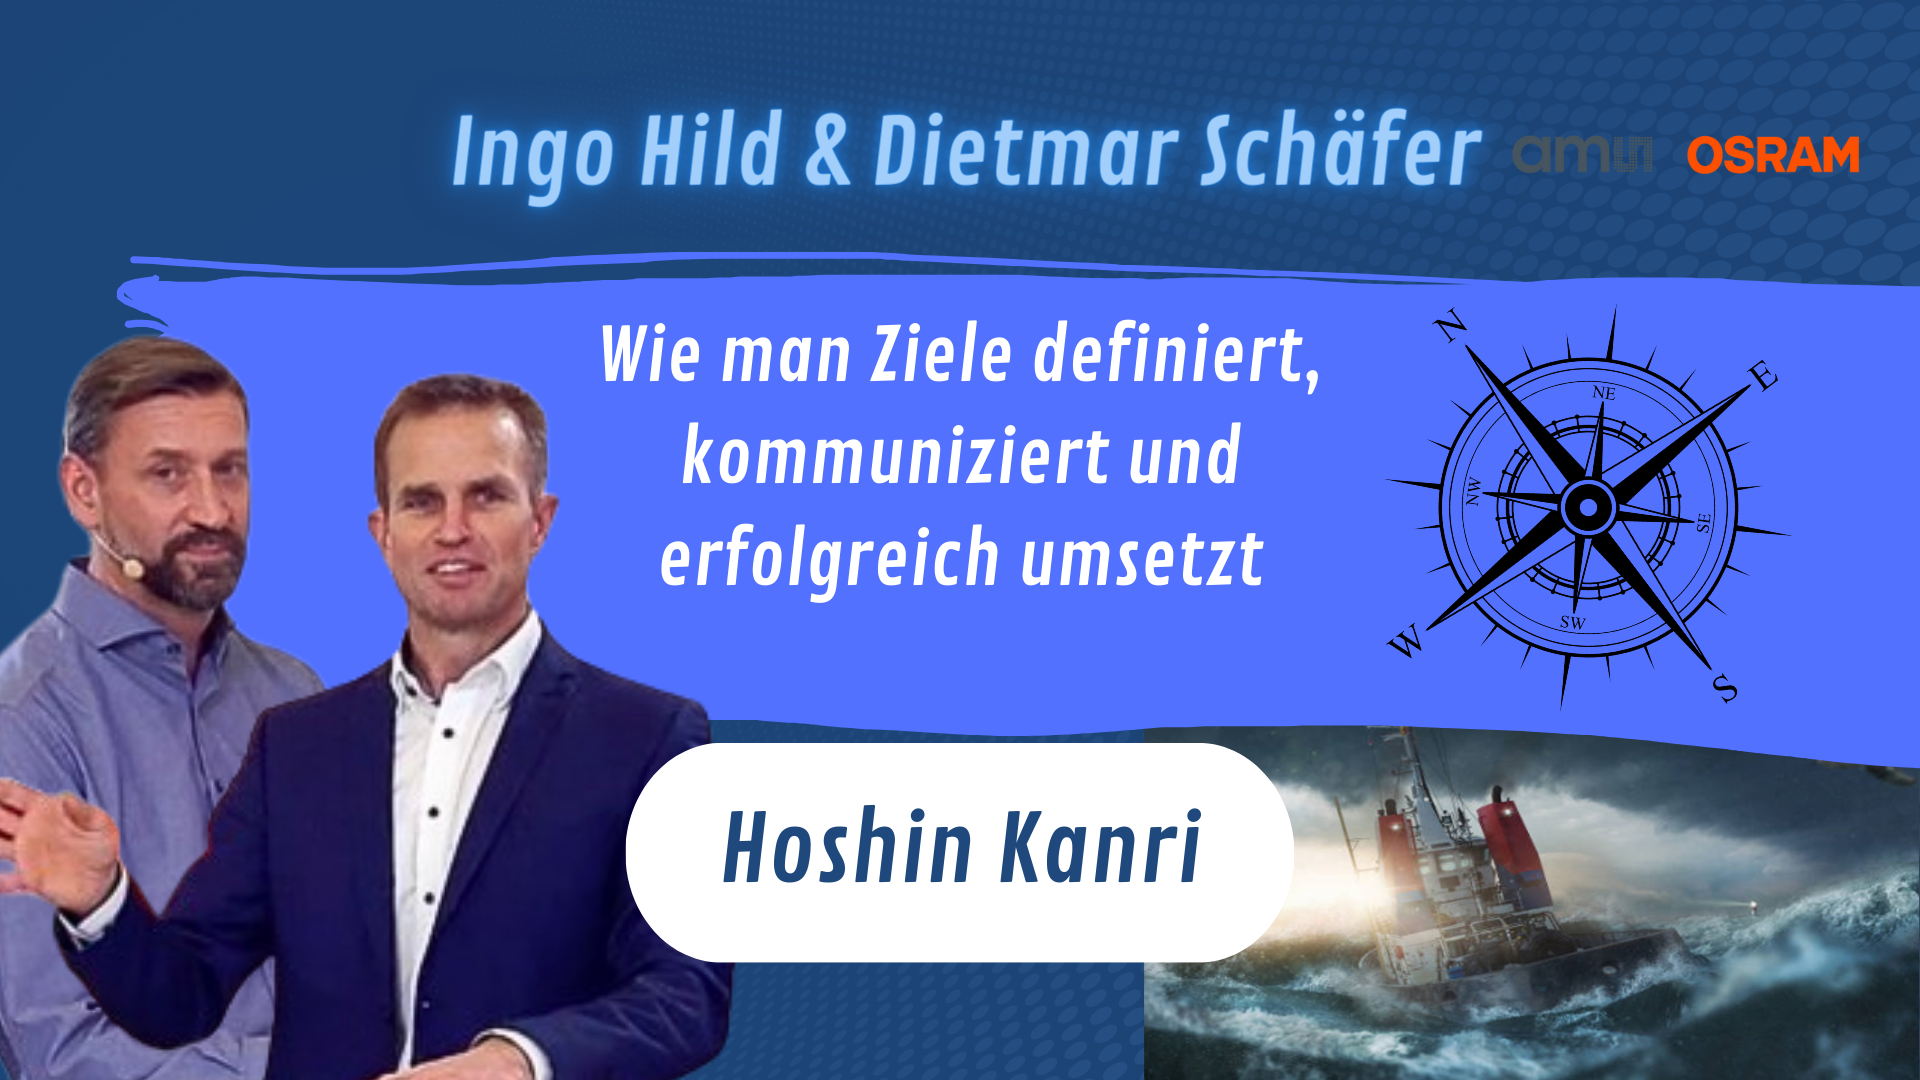 LEAN - Hoshin Kanri with Ingo Hild & Dietmar Schäfer